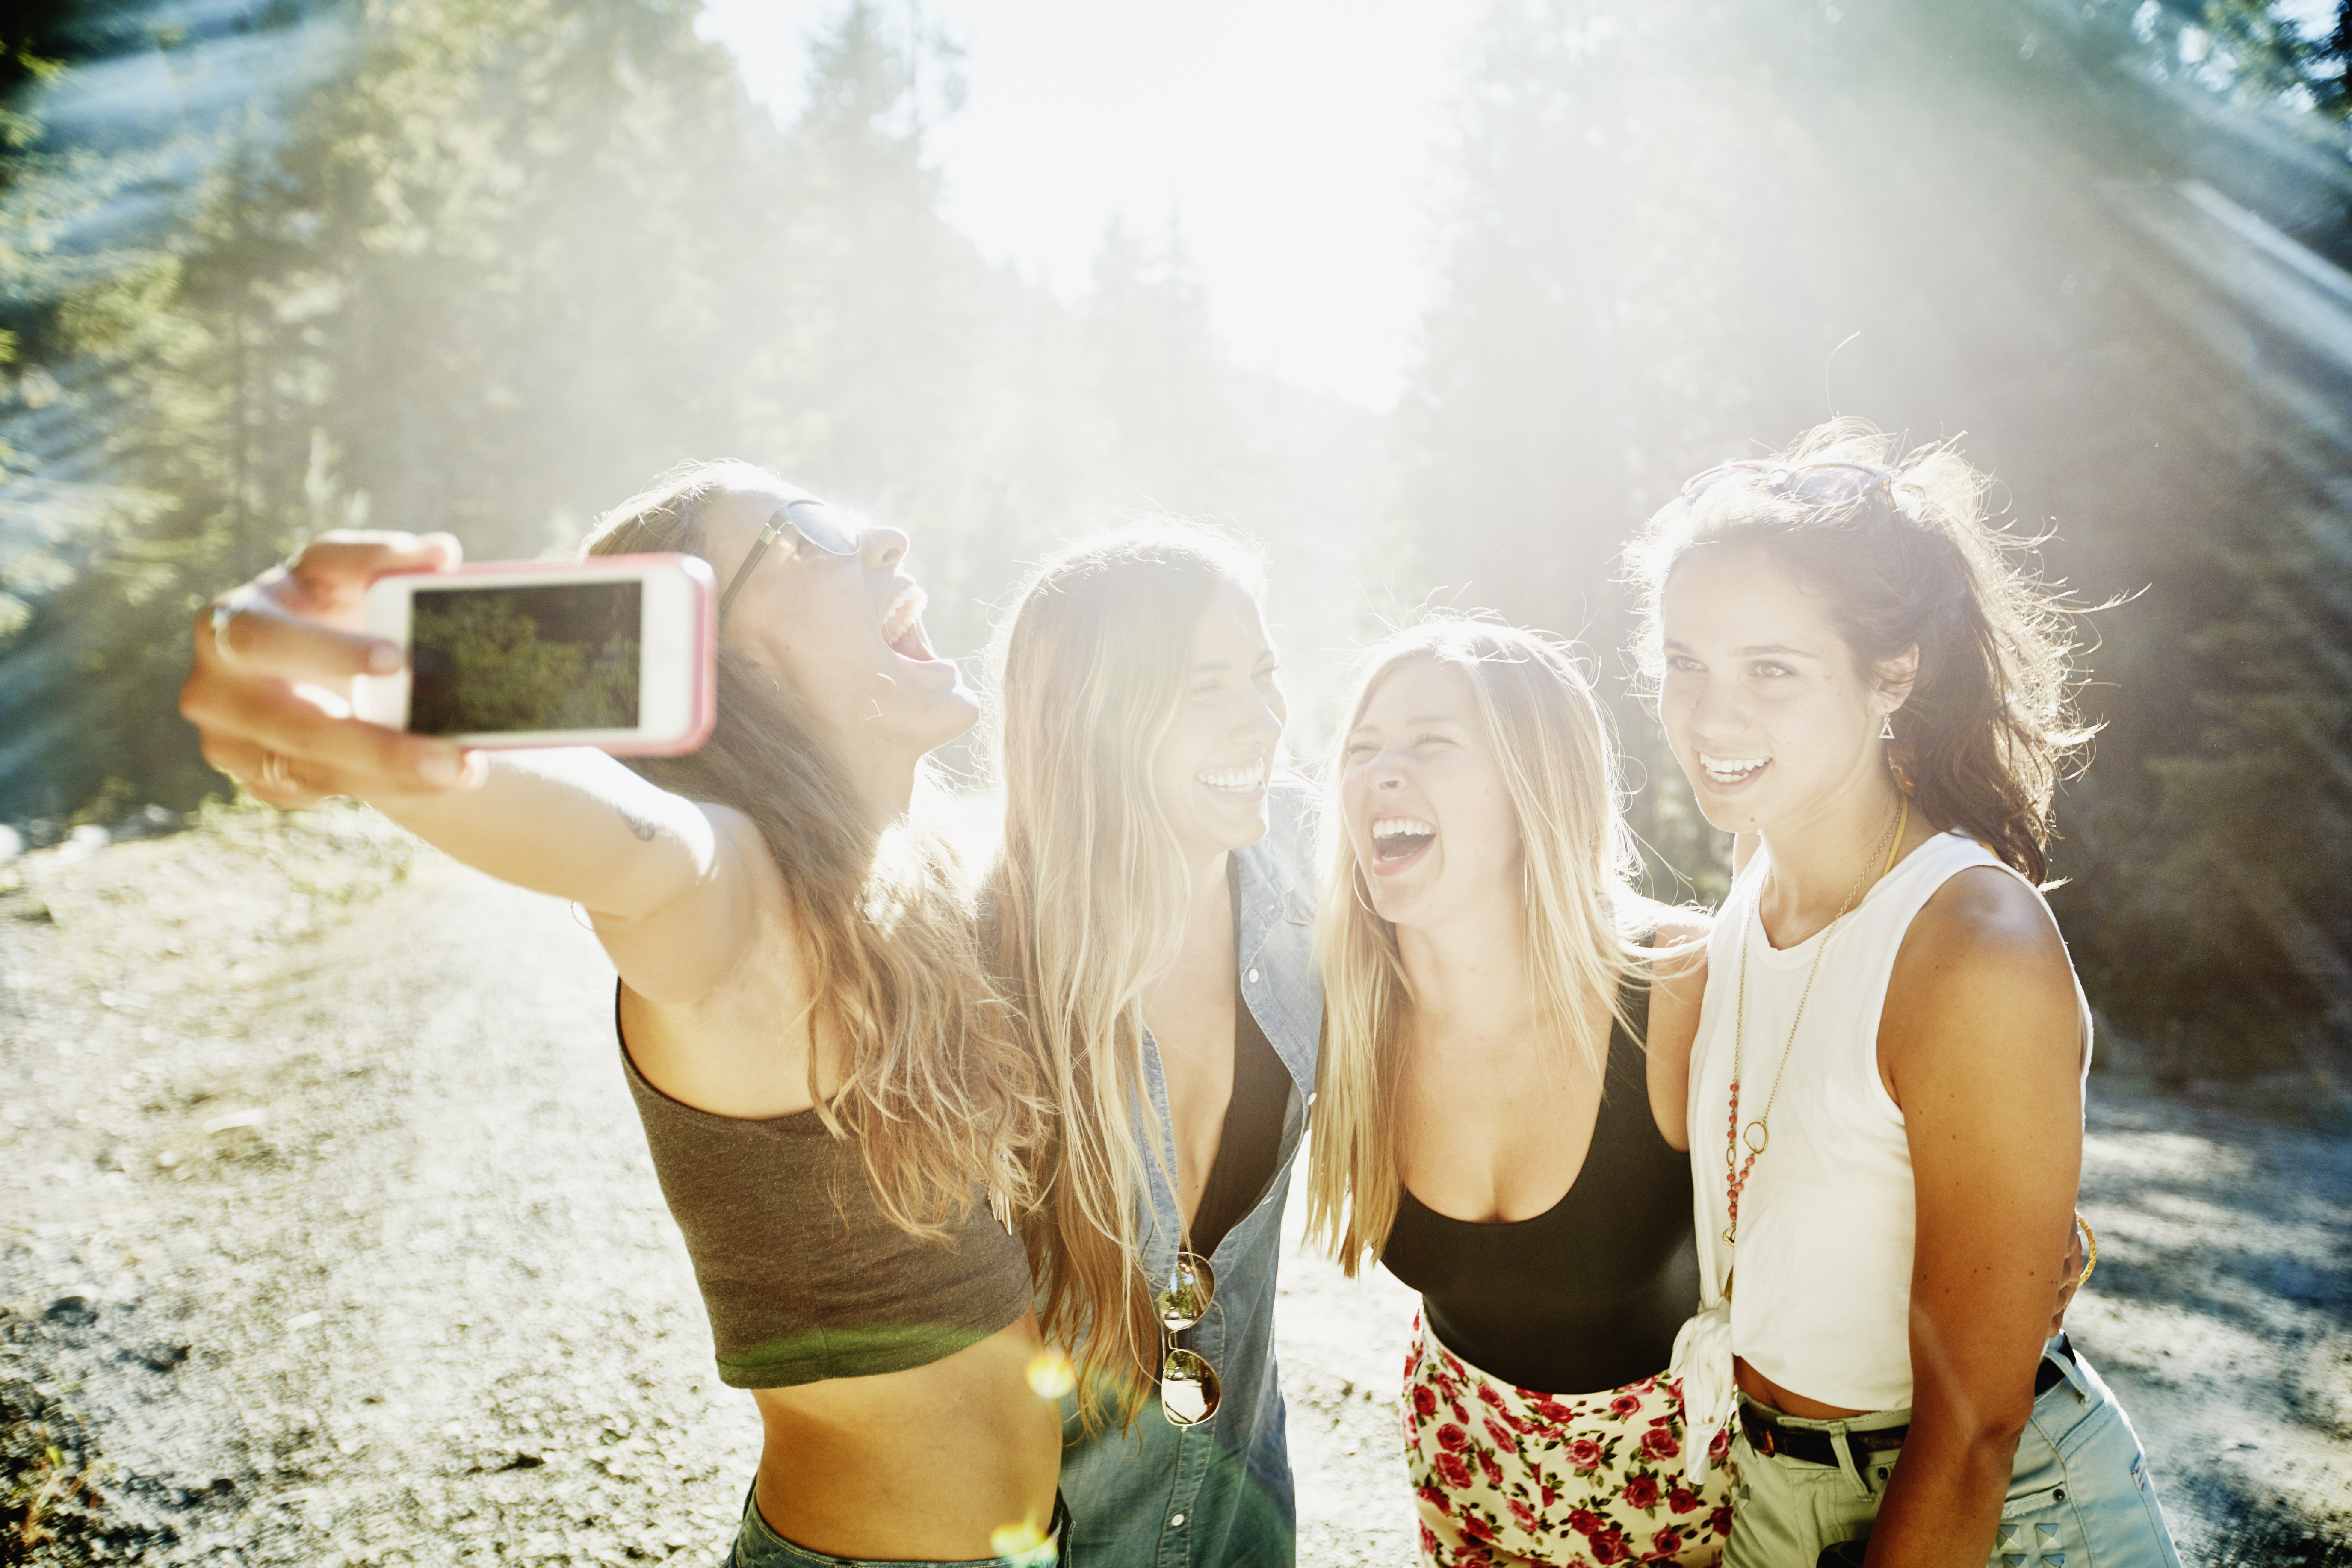 Vier junge Frauen machen ein Selfie | Quelle: Getty Images